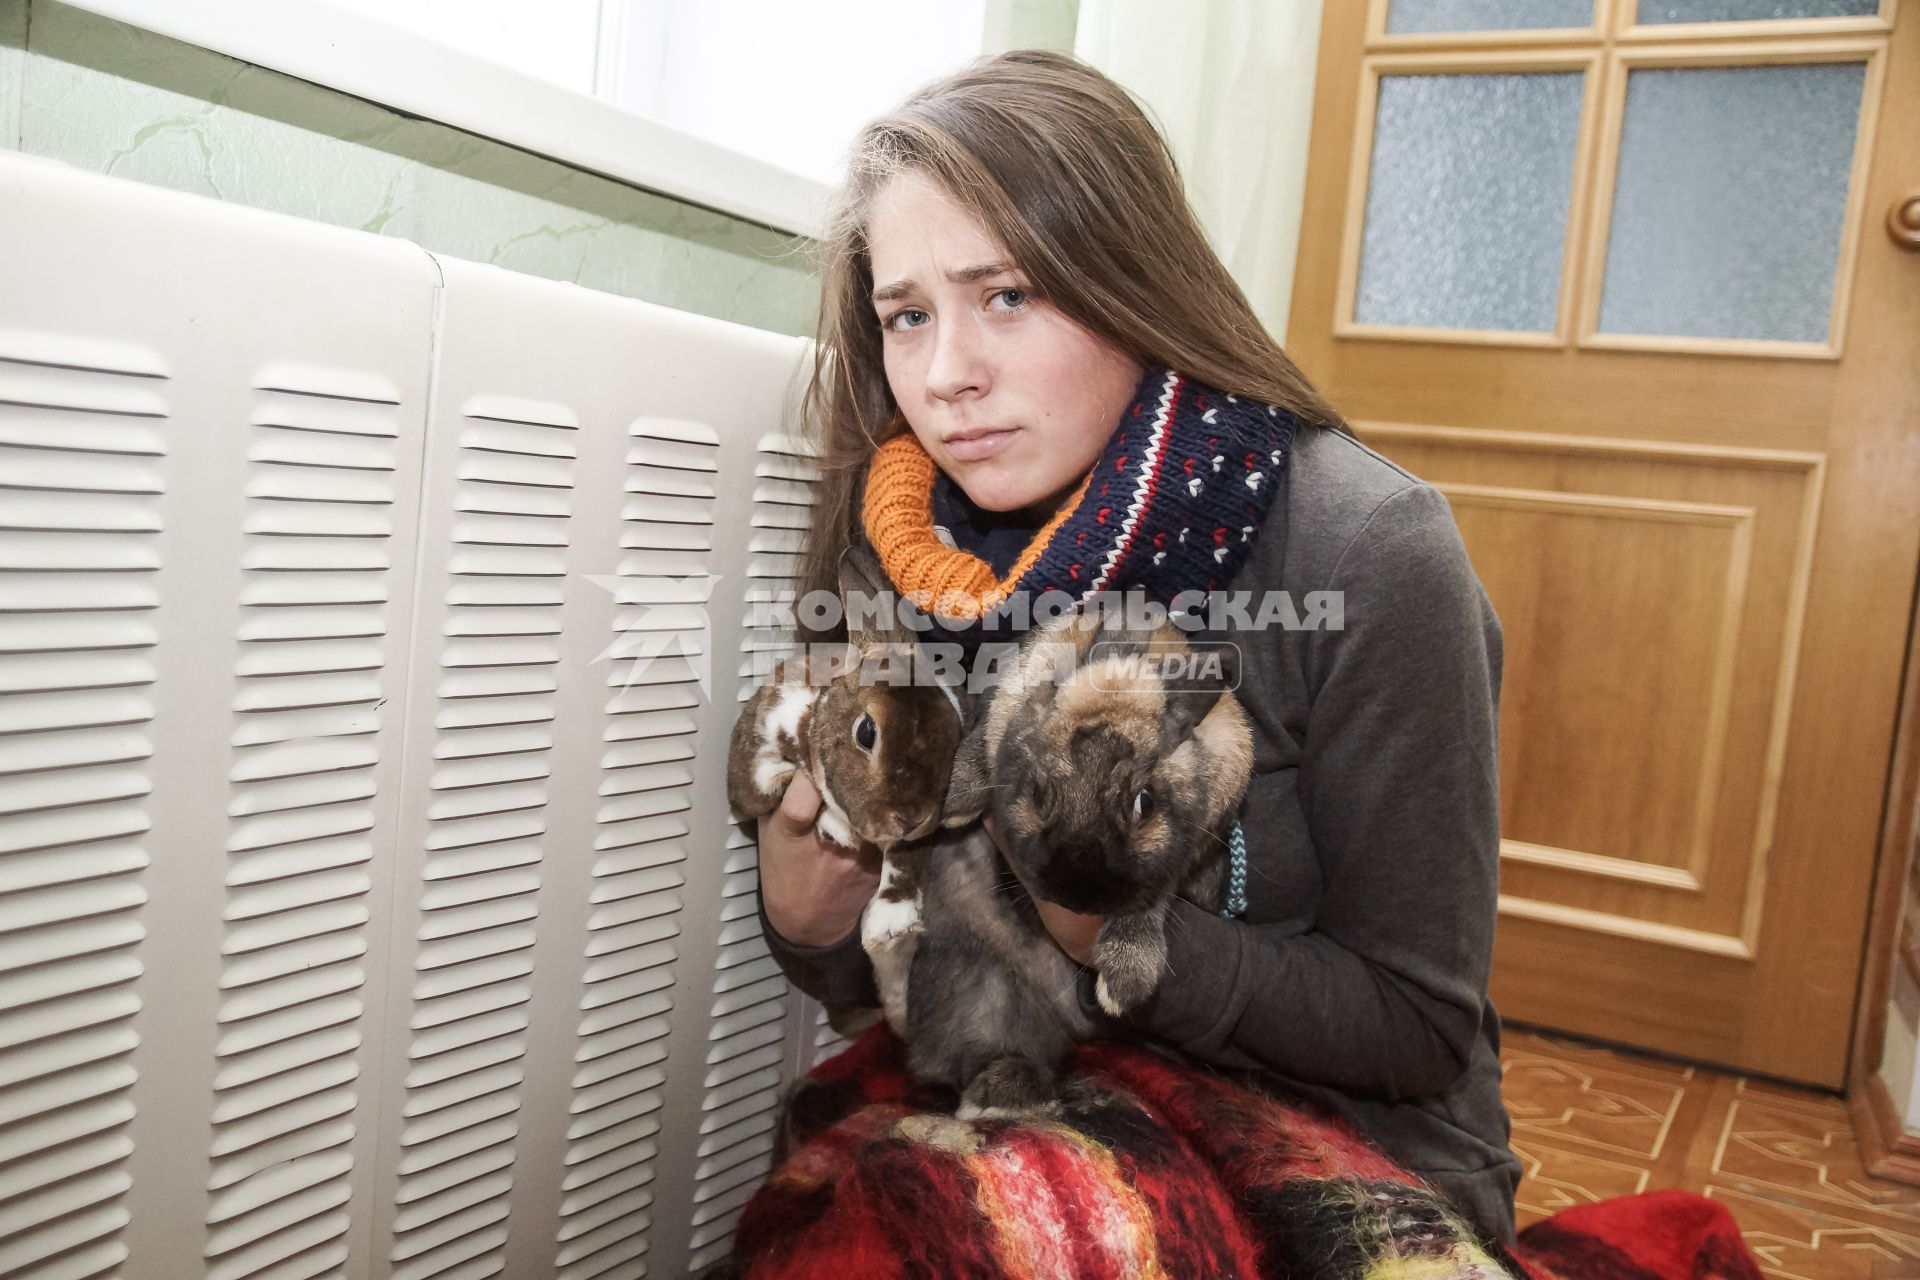 Самара.  Девушка с кроликами   греются у батареи в холодной квартире.